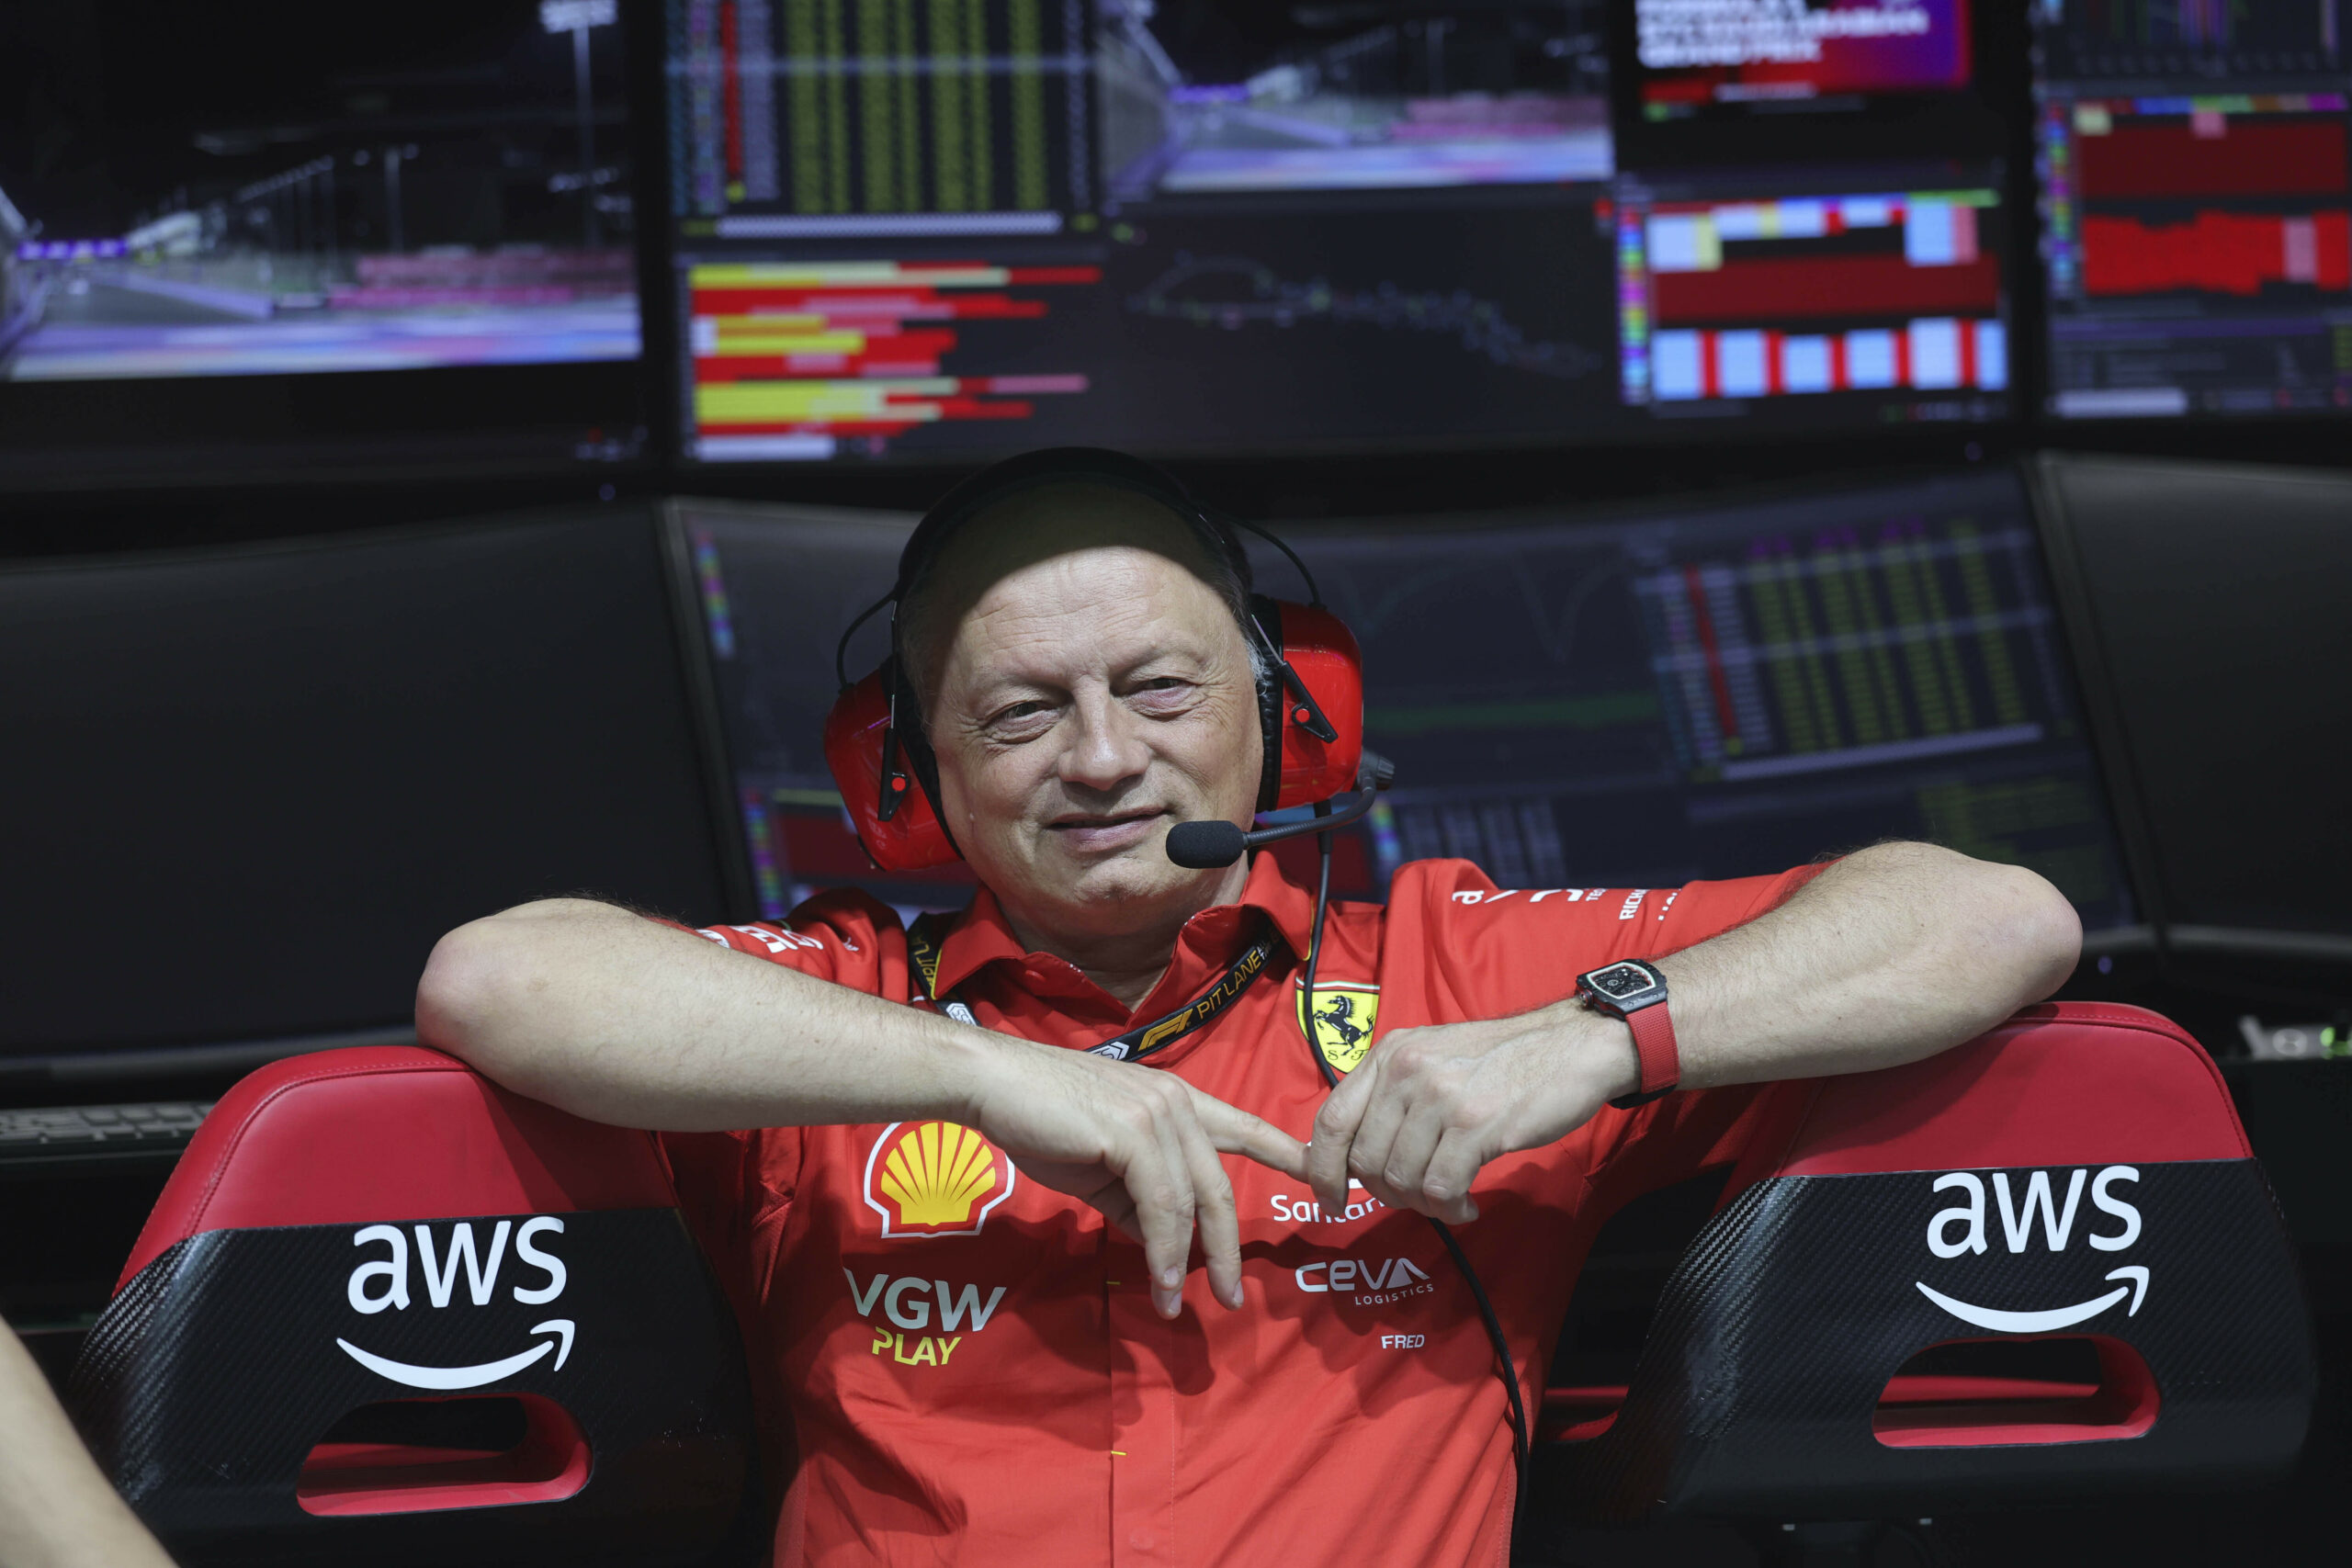 Drejtori i Ferrarit zbulon se si kanë rrjedh bisedat me Luis Hamiltonin